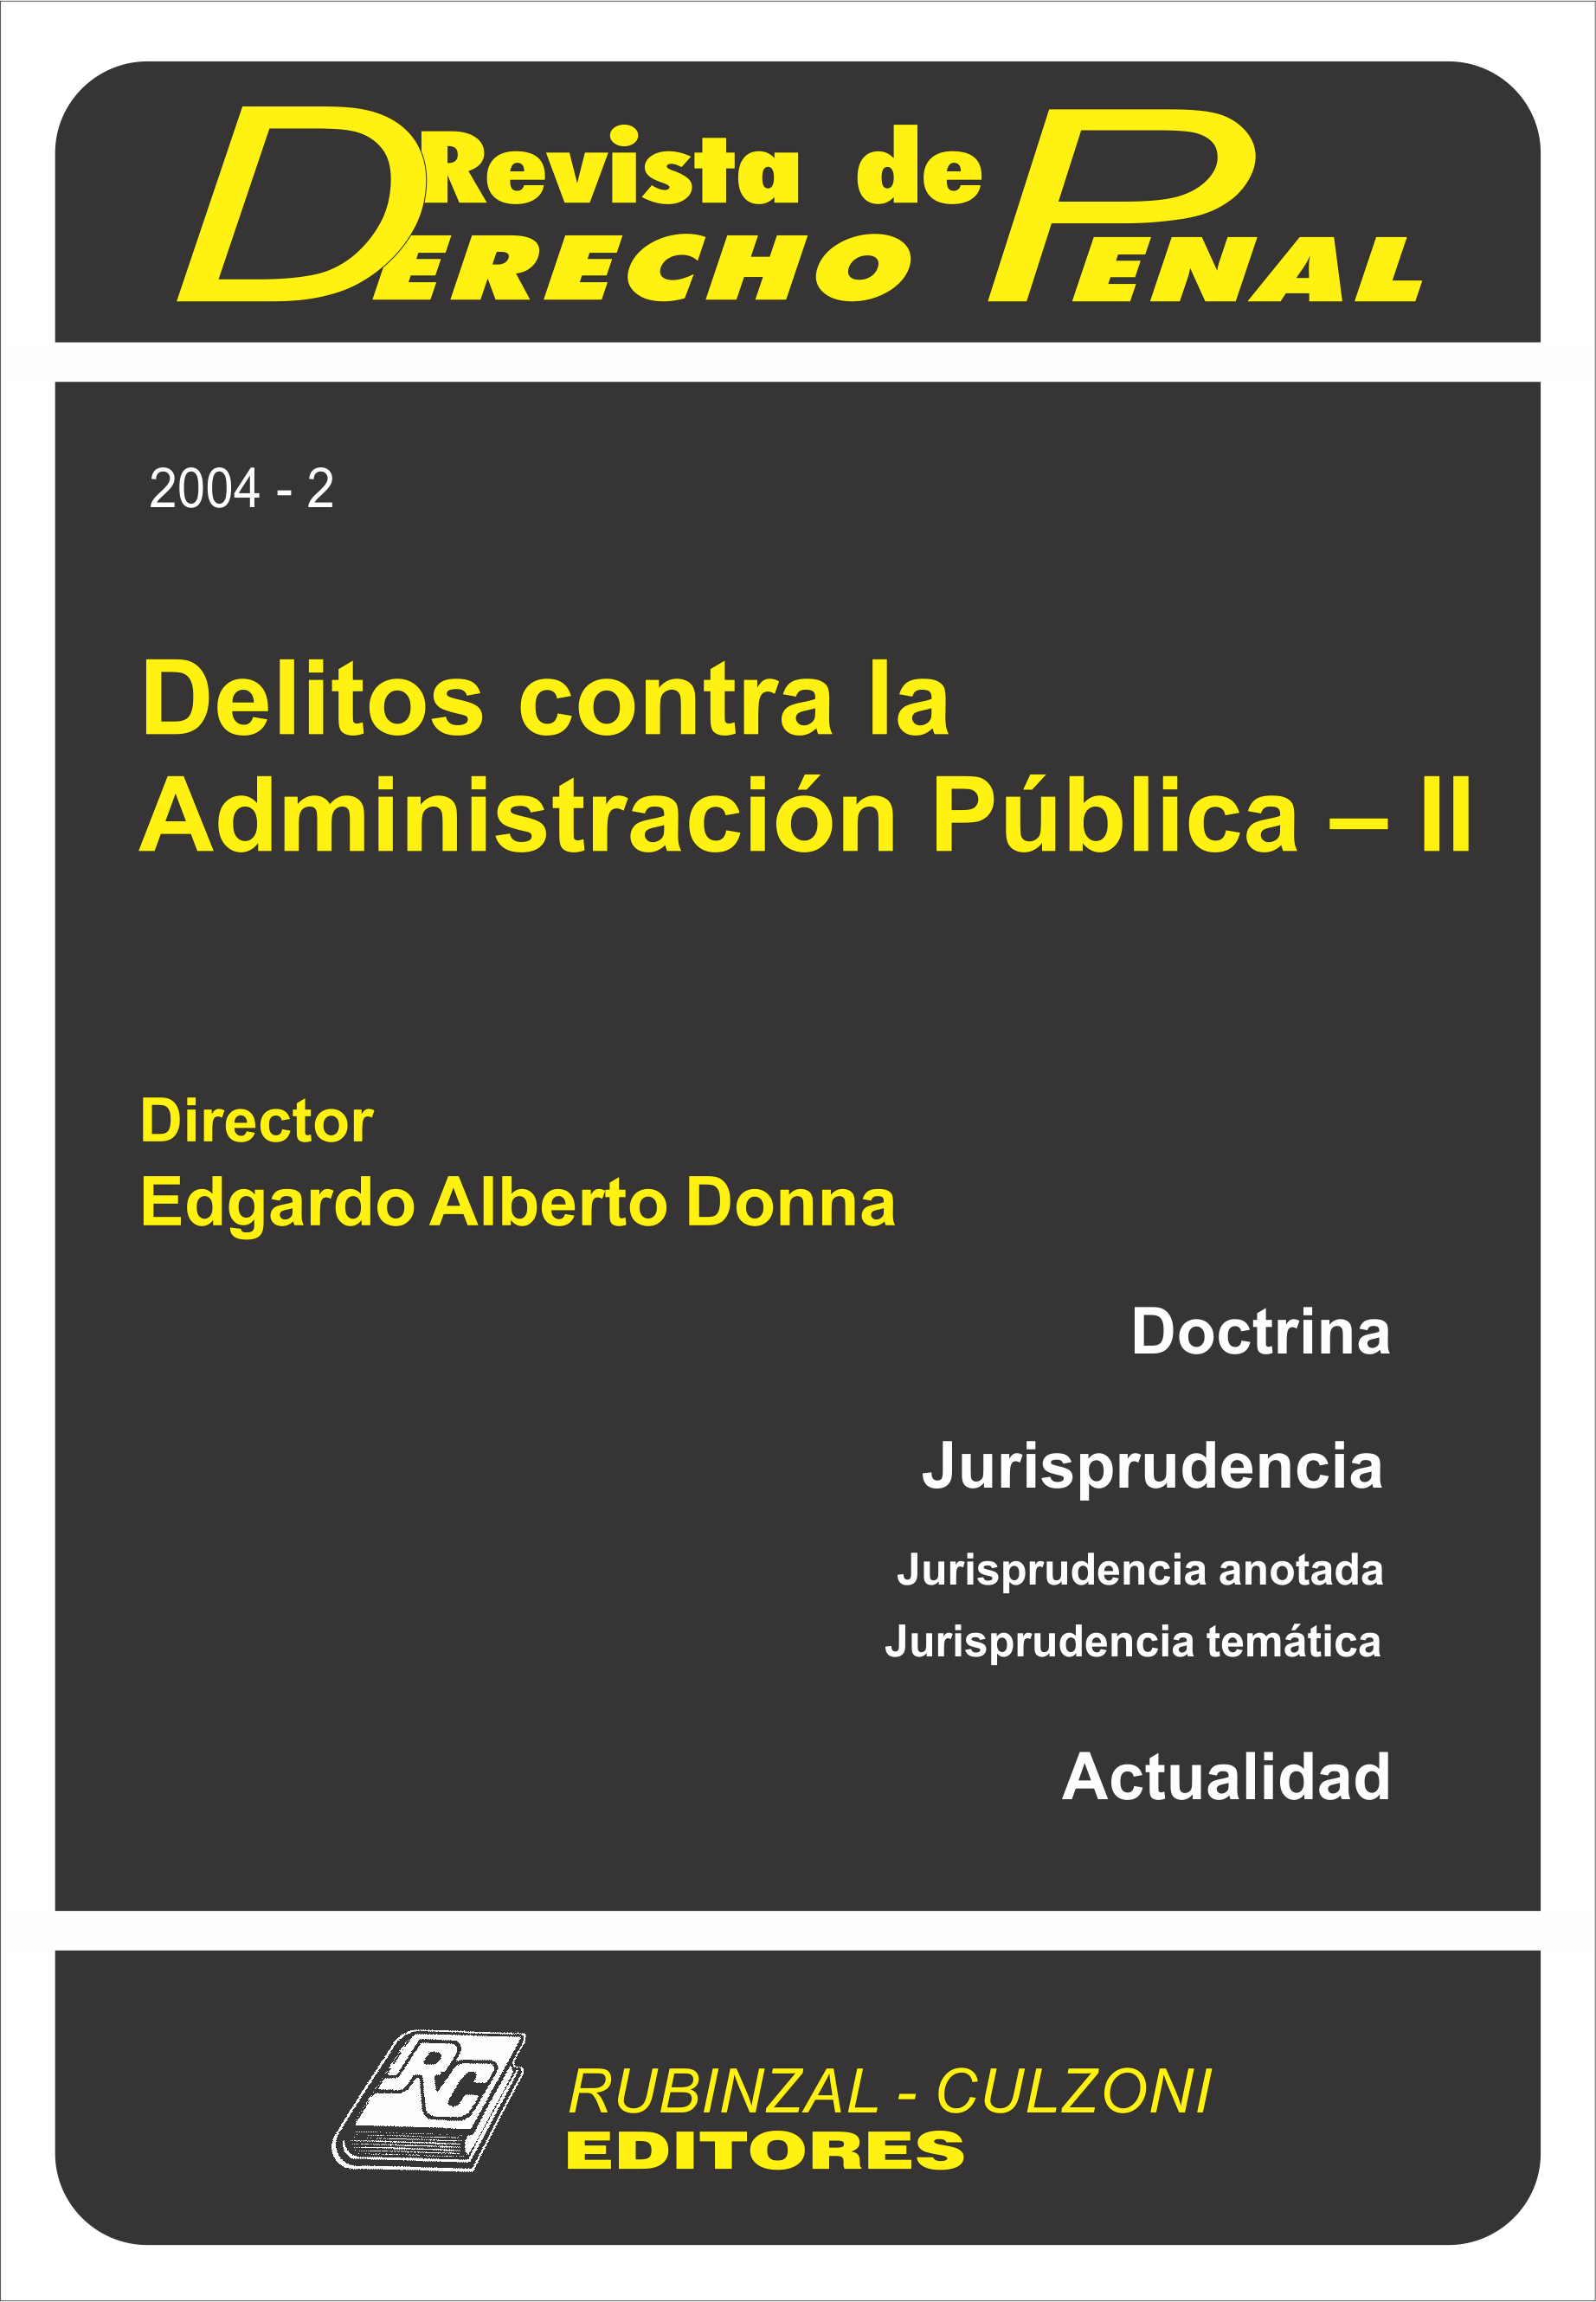 Revista de Derecho Penal - Delitos contra la Administración Pública - II.